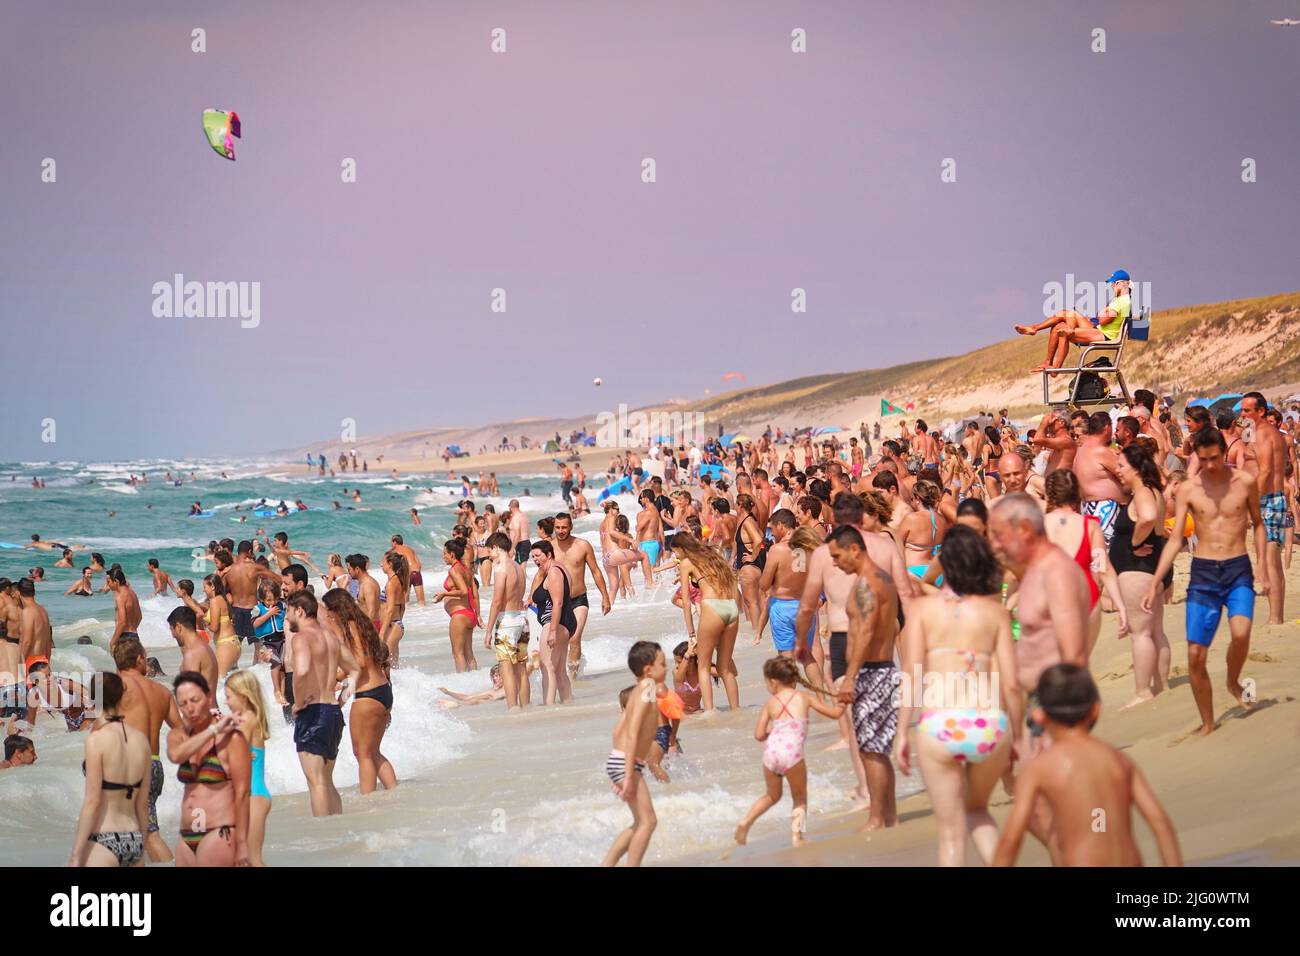 Überfüllter Strand am atlantik an einem Sommertag. Lacanau, Frankreich - August 2018 Stockfoto